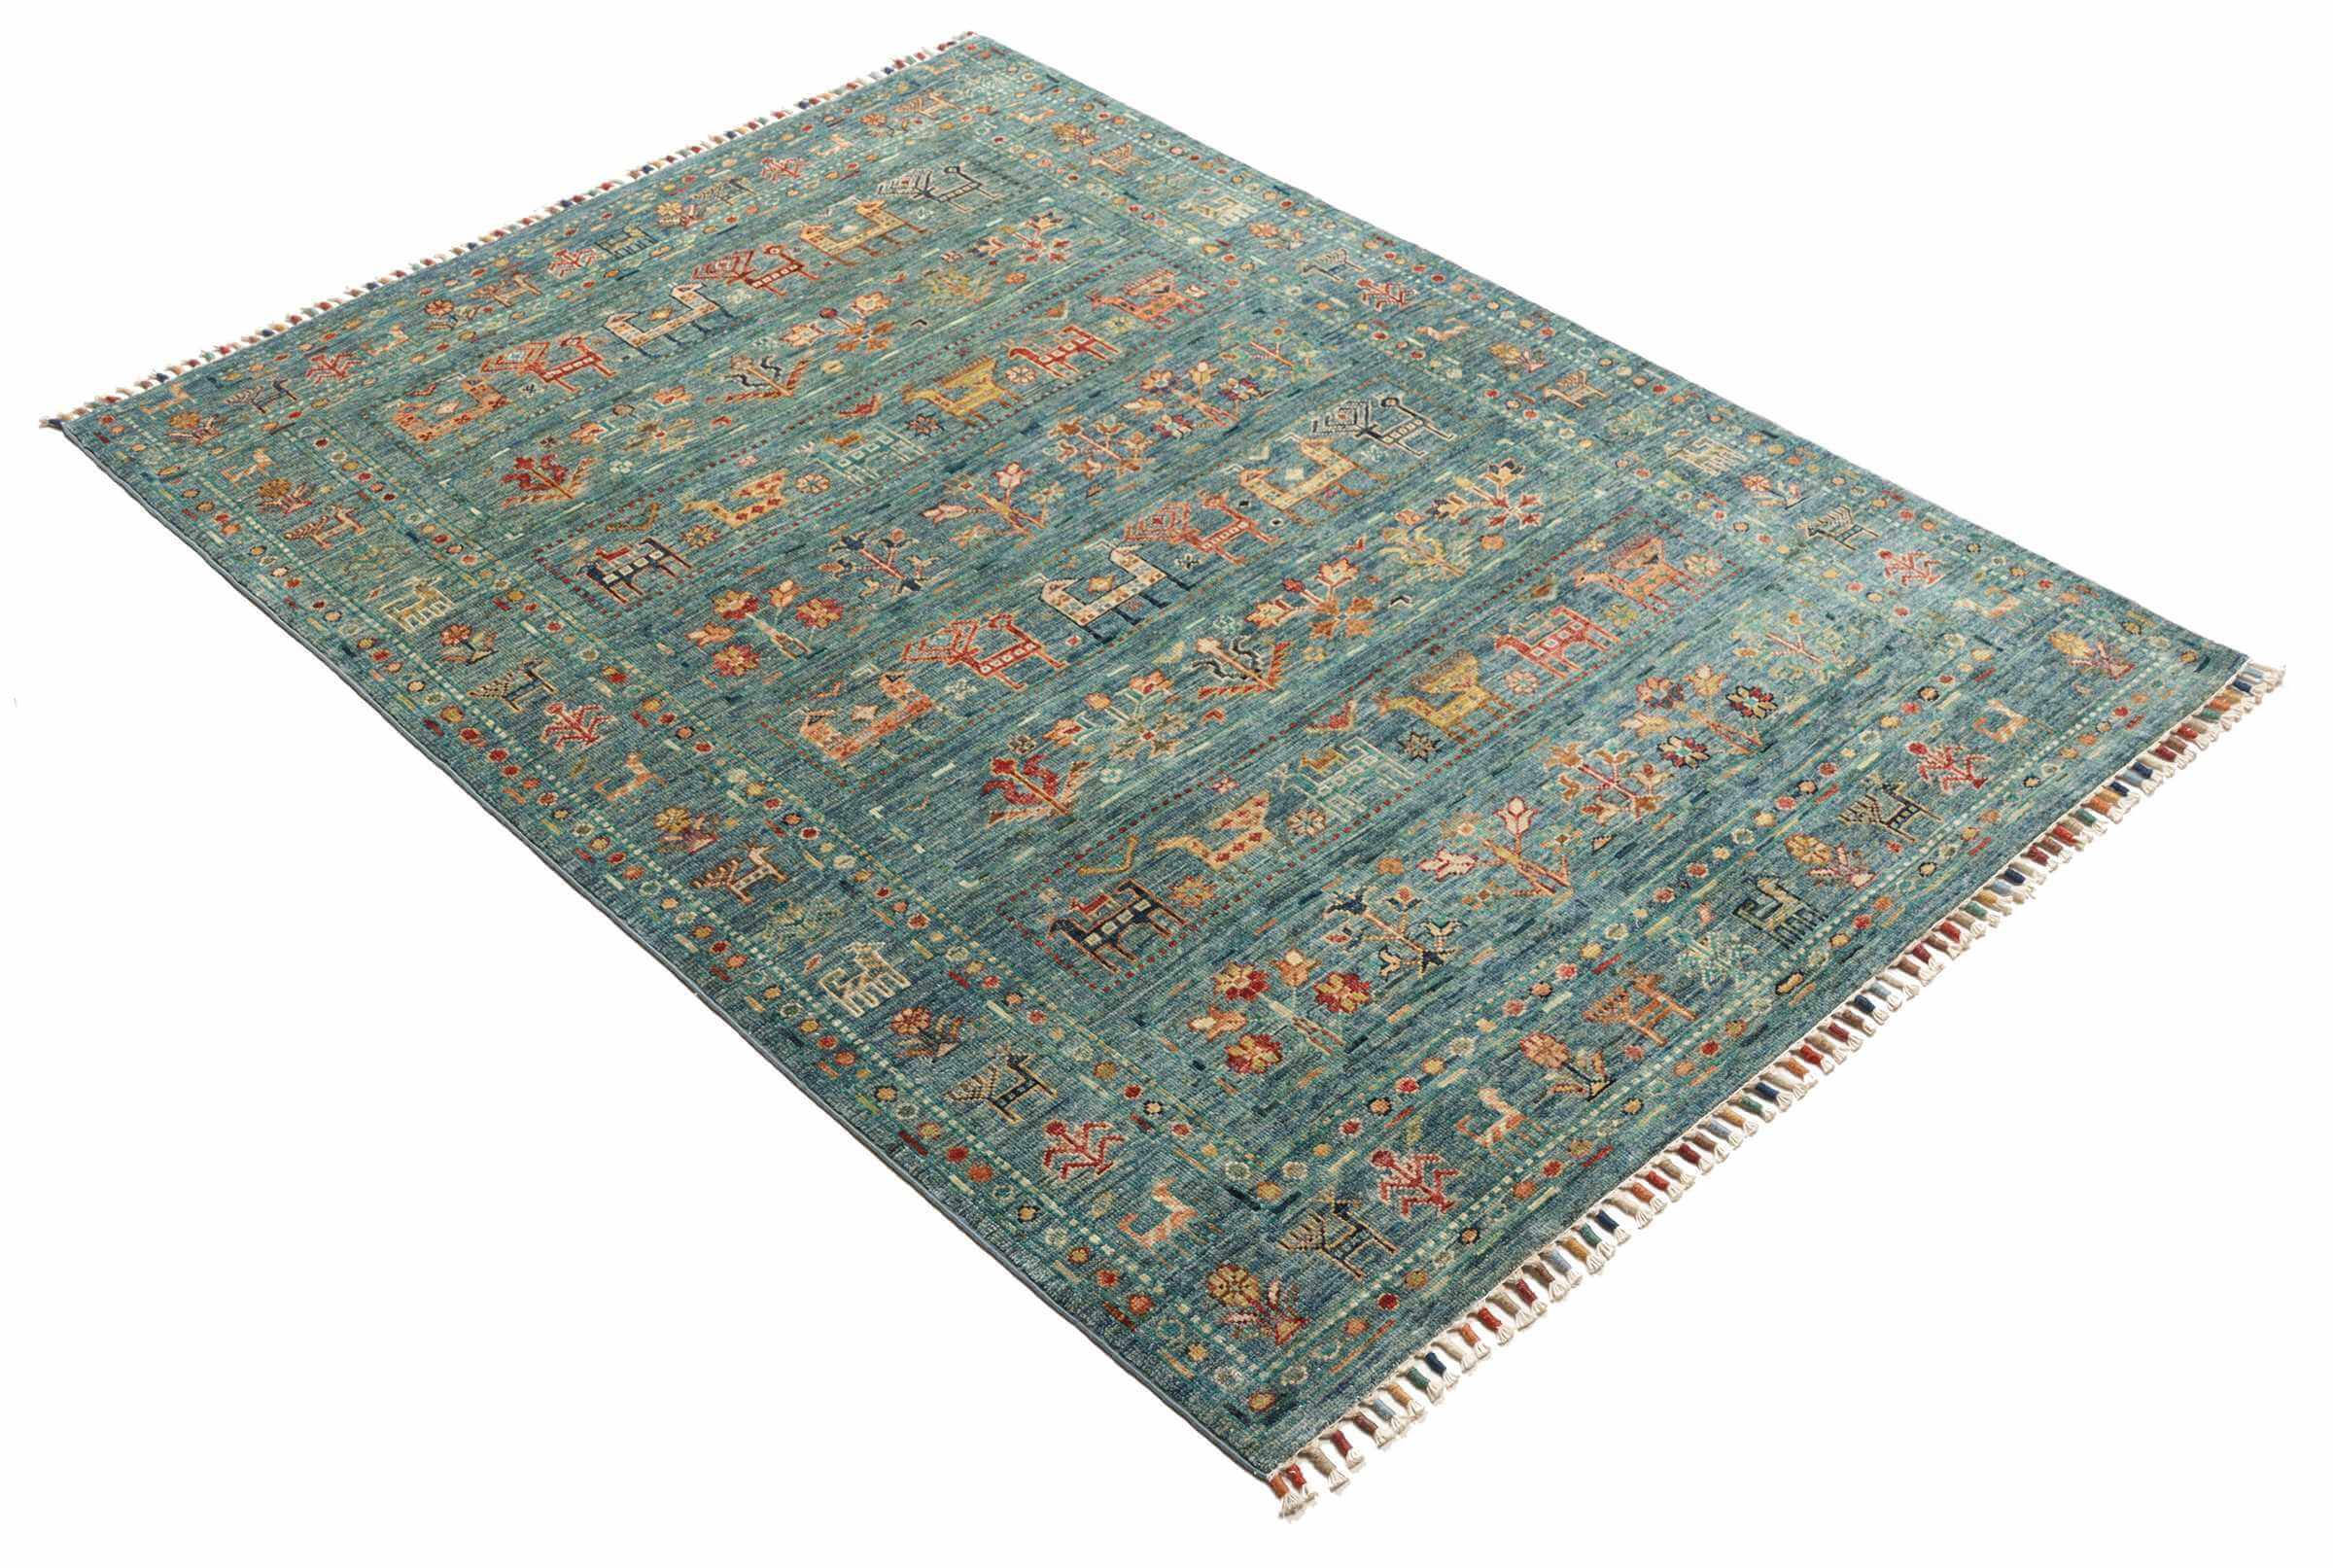 Afghanteppich, Schurwolle, handgeknüpft, 171 x 123 cm, Schrägansicht